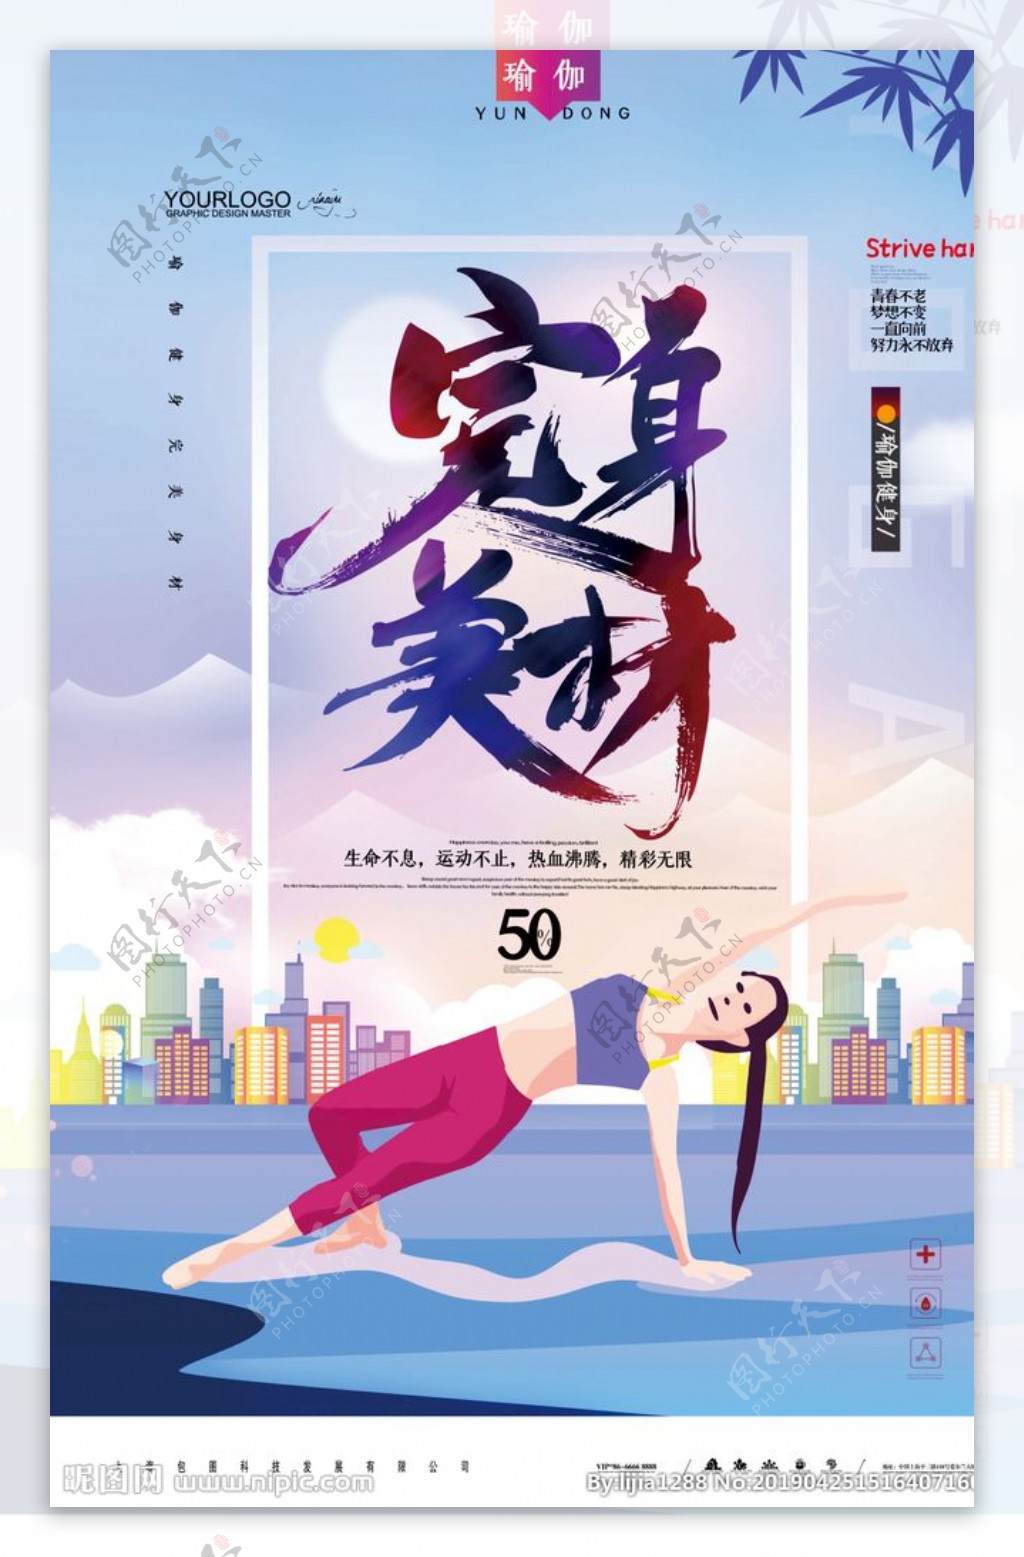 剪纸风完美身材瑜伽健身运动海报